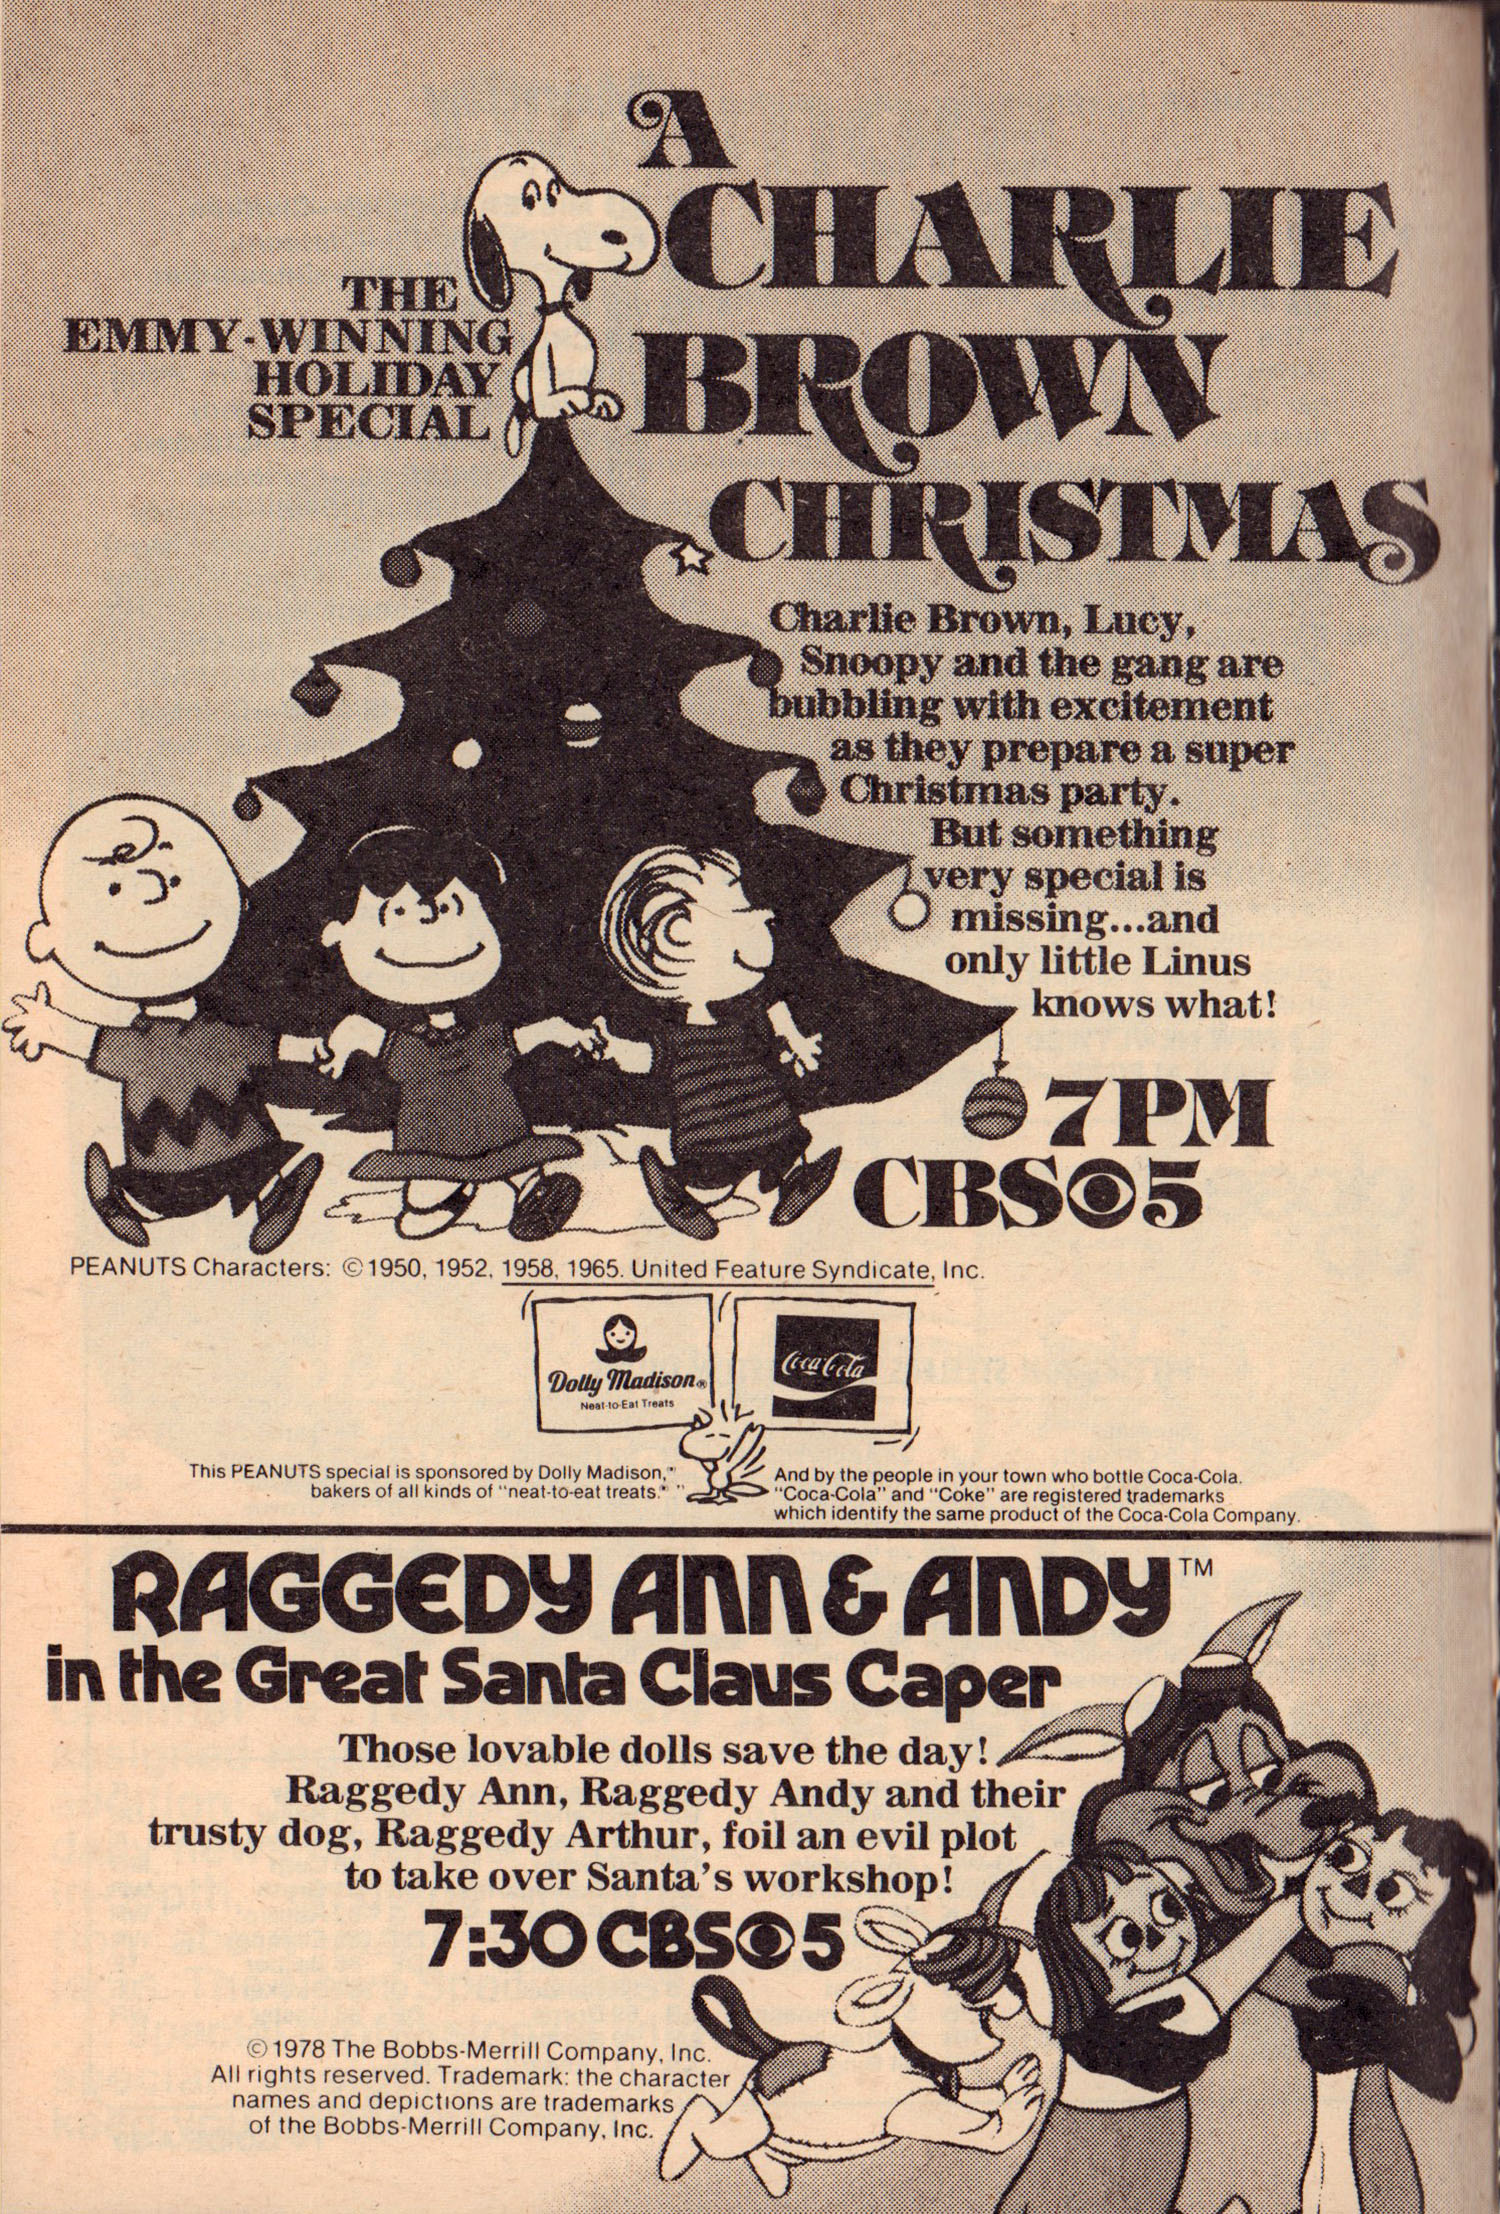 TV Guide, Dec. 8-14, 1979